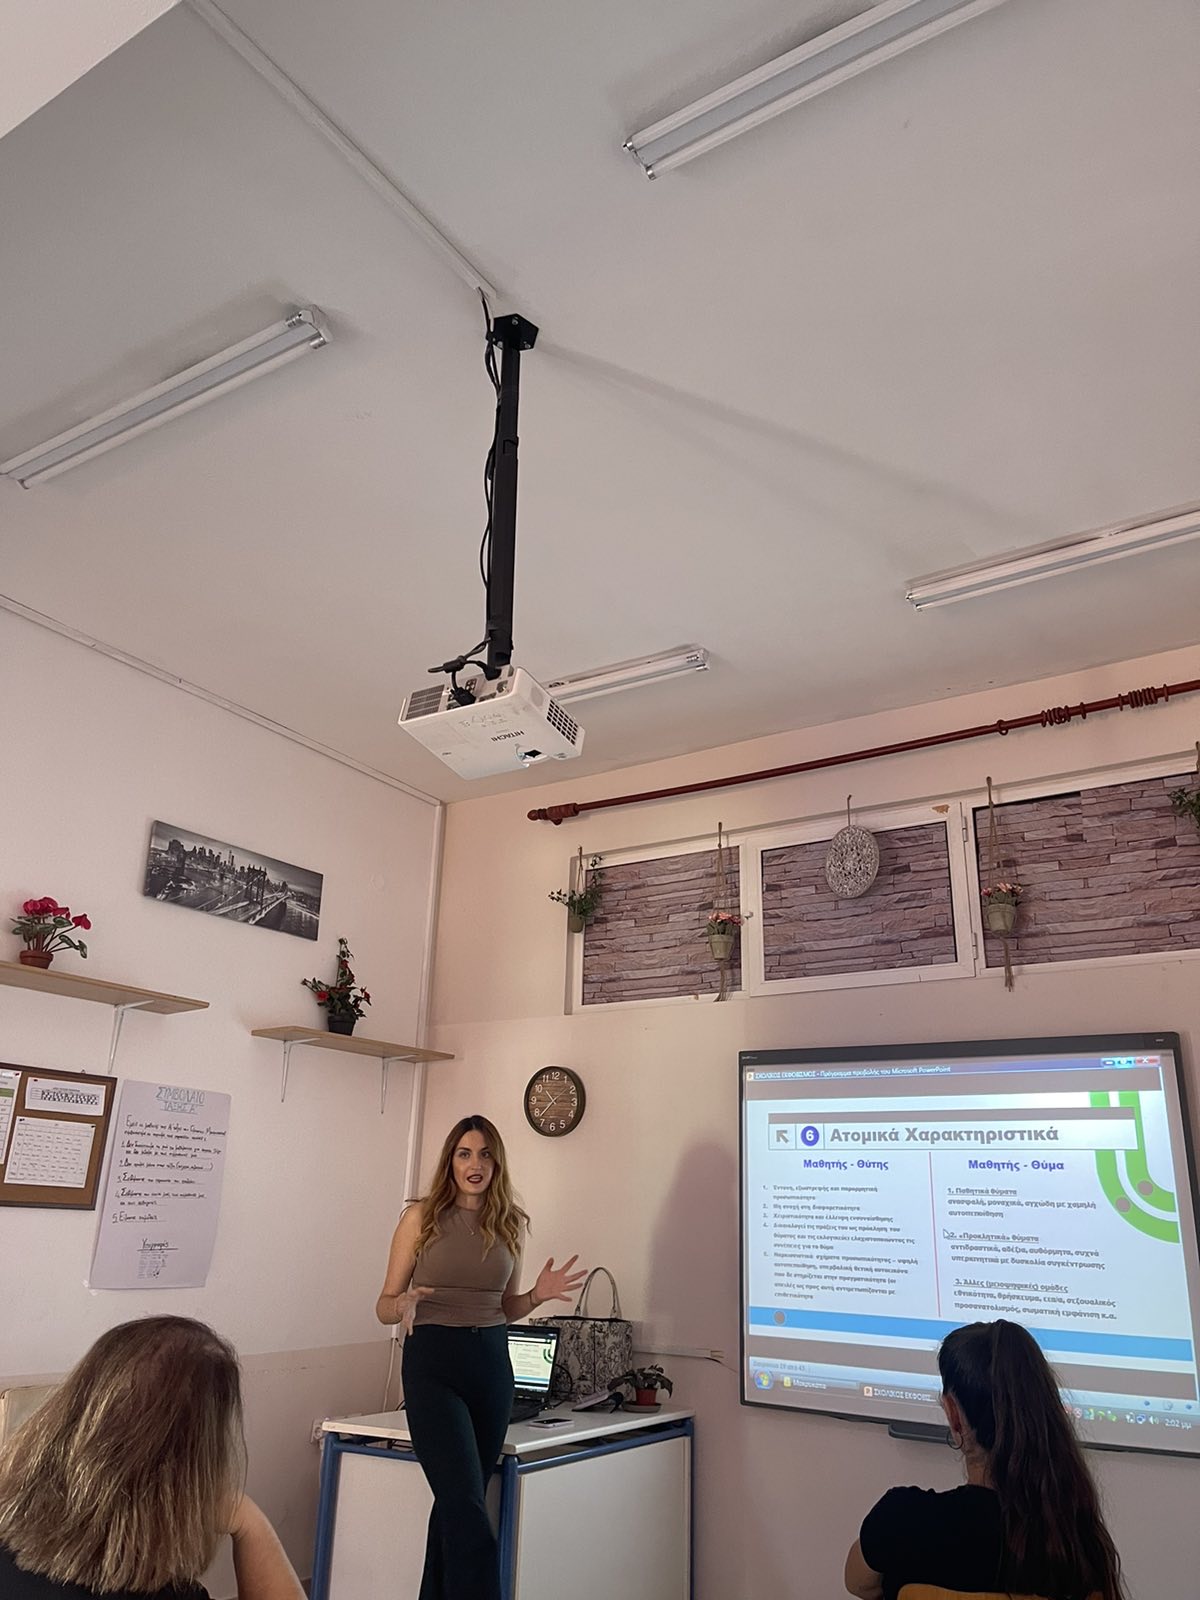 Κέντρο κοινότητας Δήμου Διρφύων Μεσσαπίων:Υλοποίηση δράσης στο Γυμνάσιο Μακρυκάπας IMG 1349